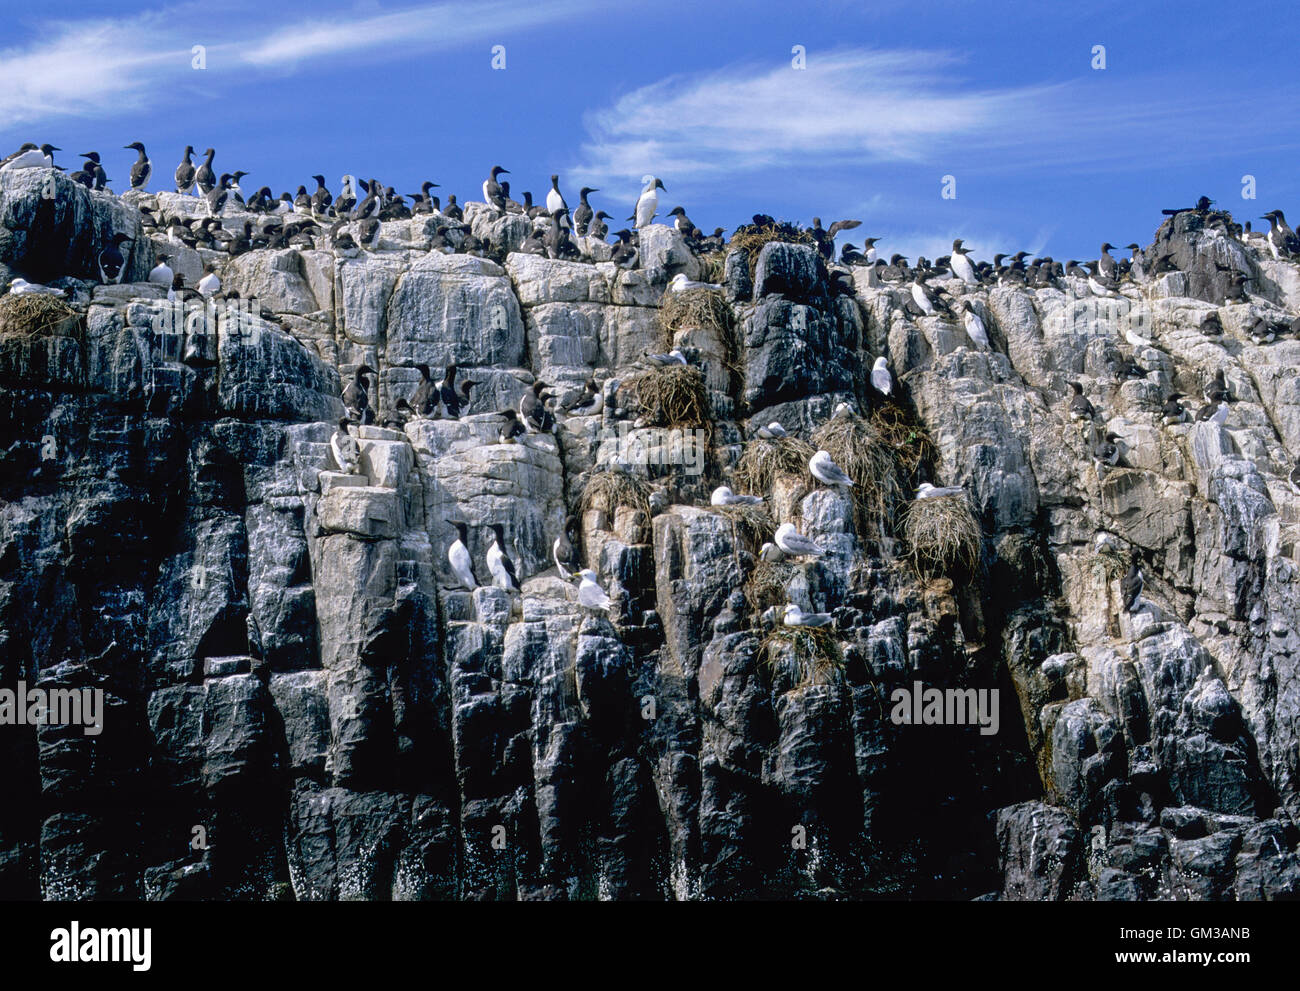 Guillemot, (Uria aalge) e Kittiwake, (Rissa tridactyla), cliff colonia nidificazione, farne Islands, Northumberland, Isole britanniche Foto Stock